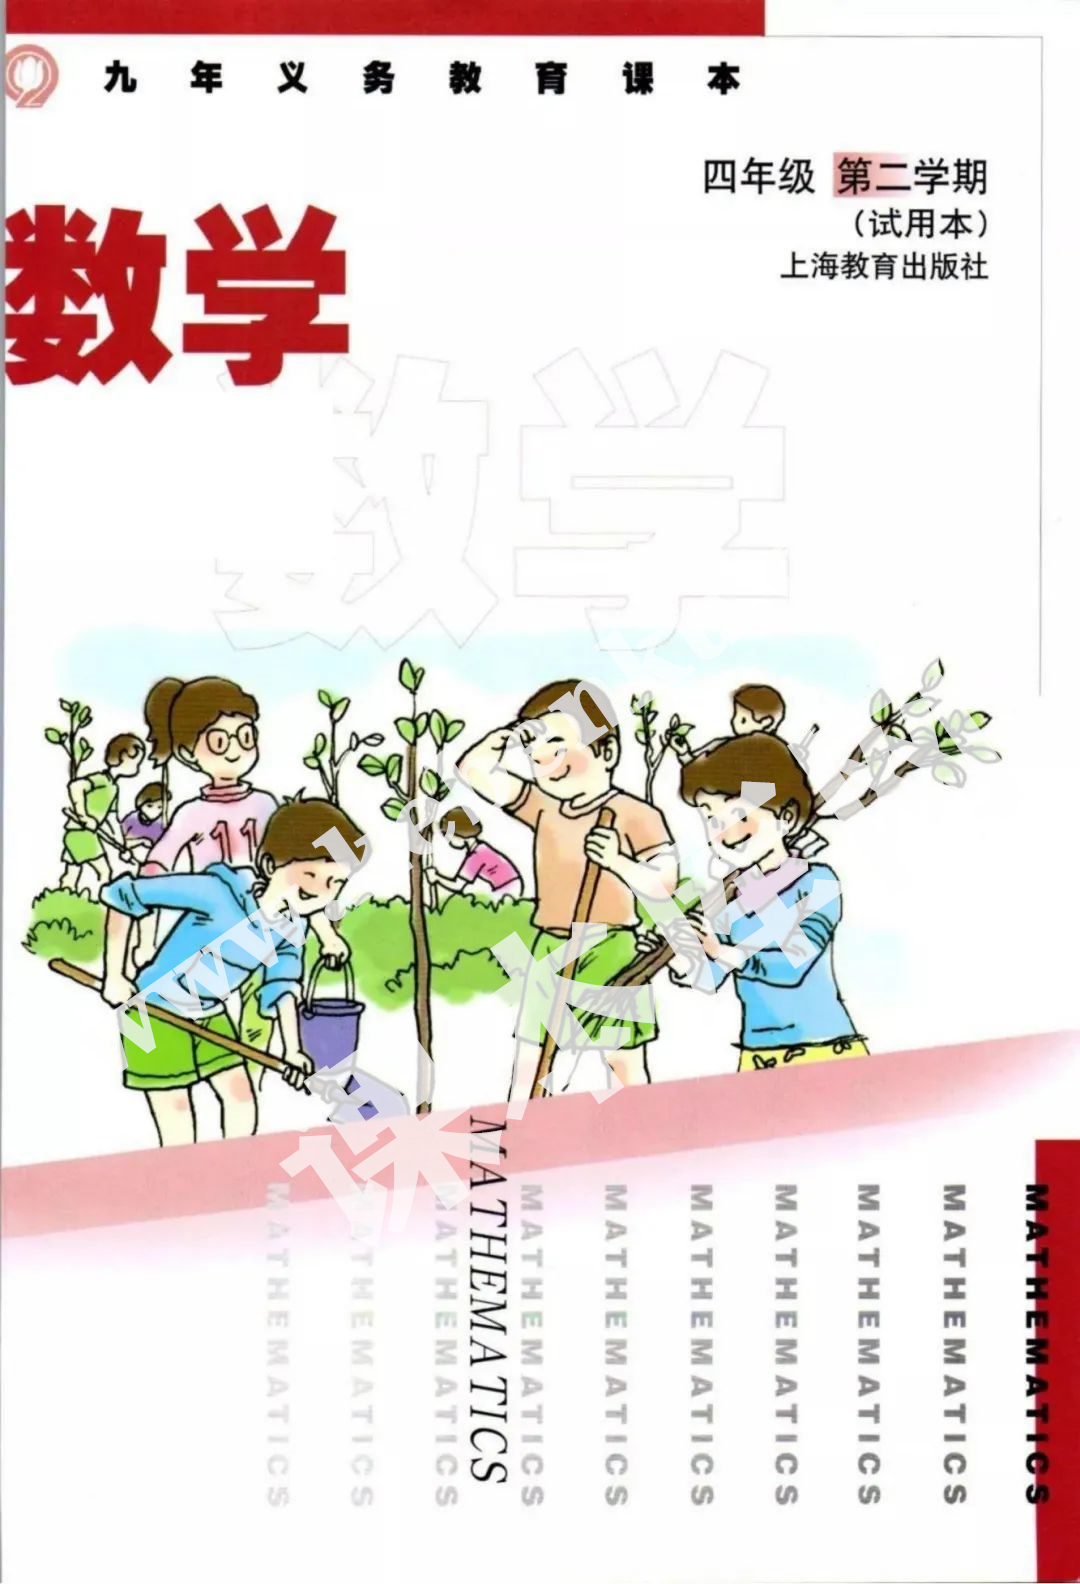 上海教育出版社九年义务教育教科书四年级数学下册电子课本